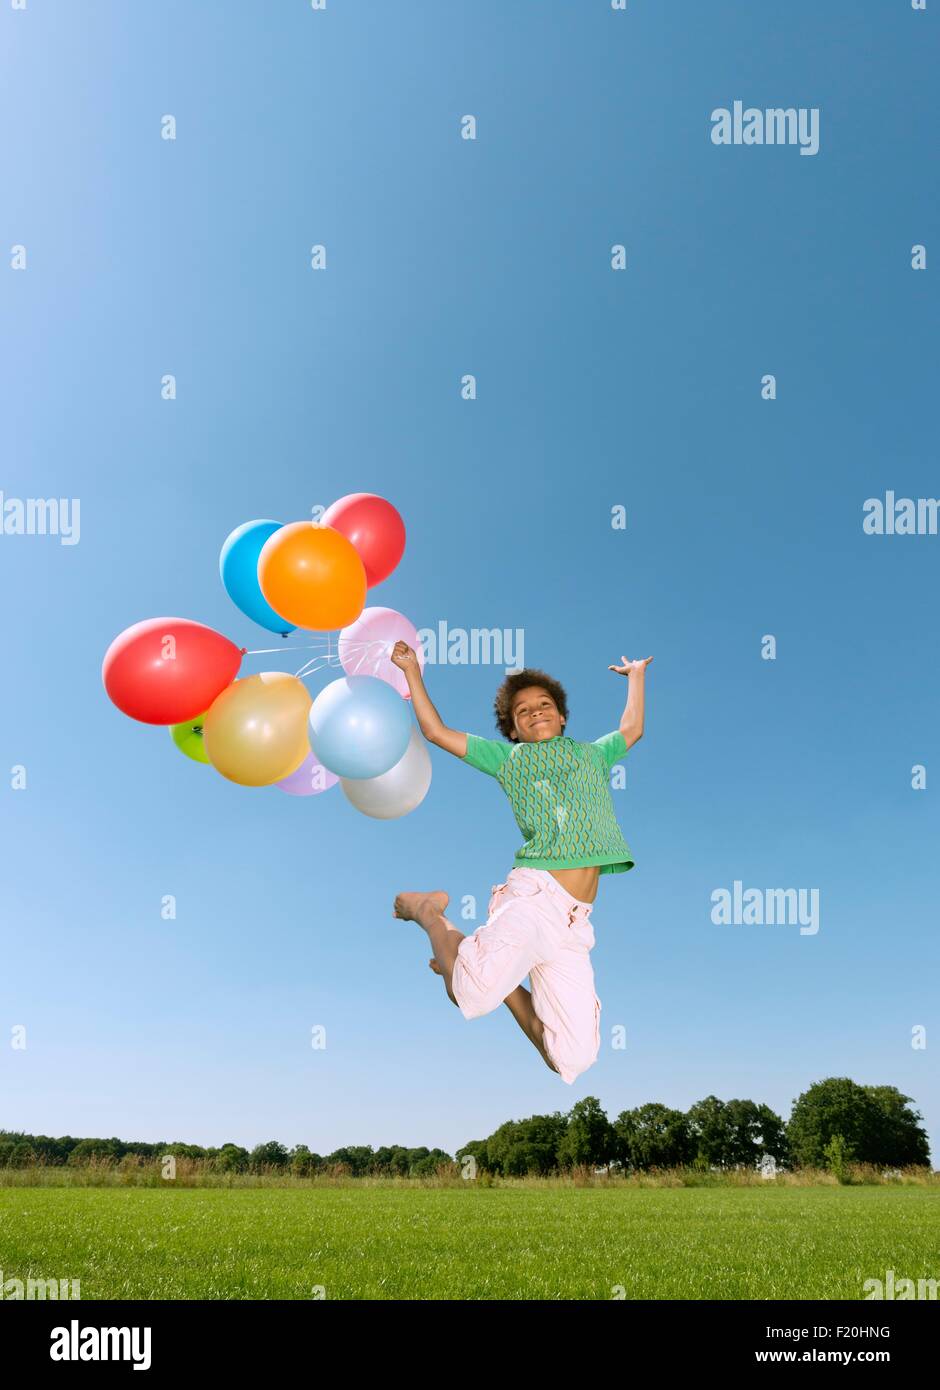 Junge hält Haufen Luftballons springen Luft gegen blauen Himmel Stockfoto